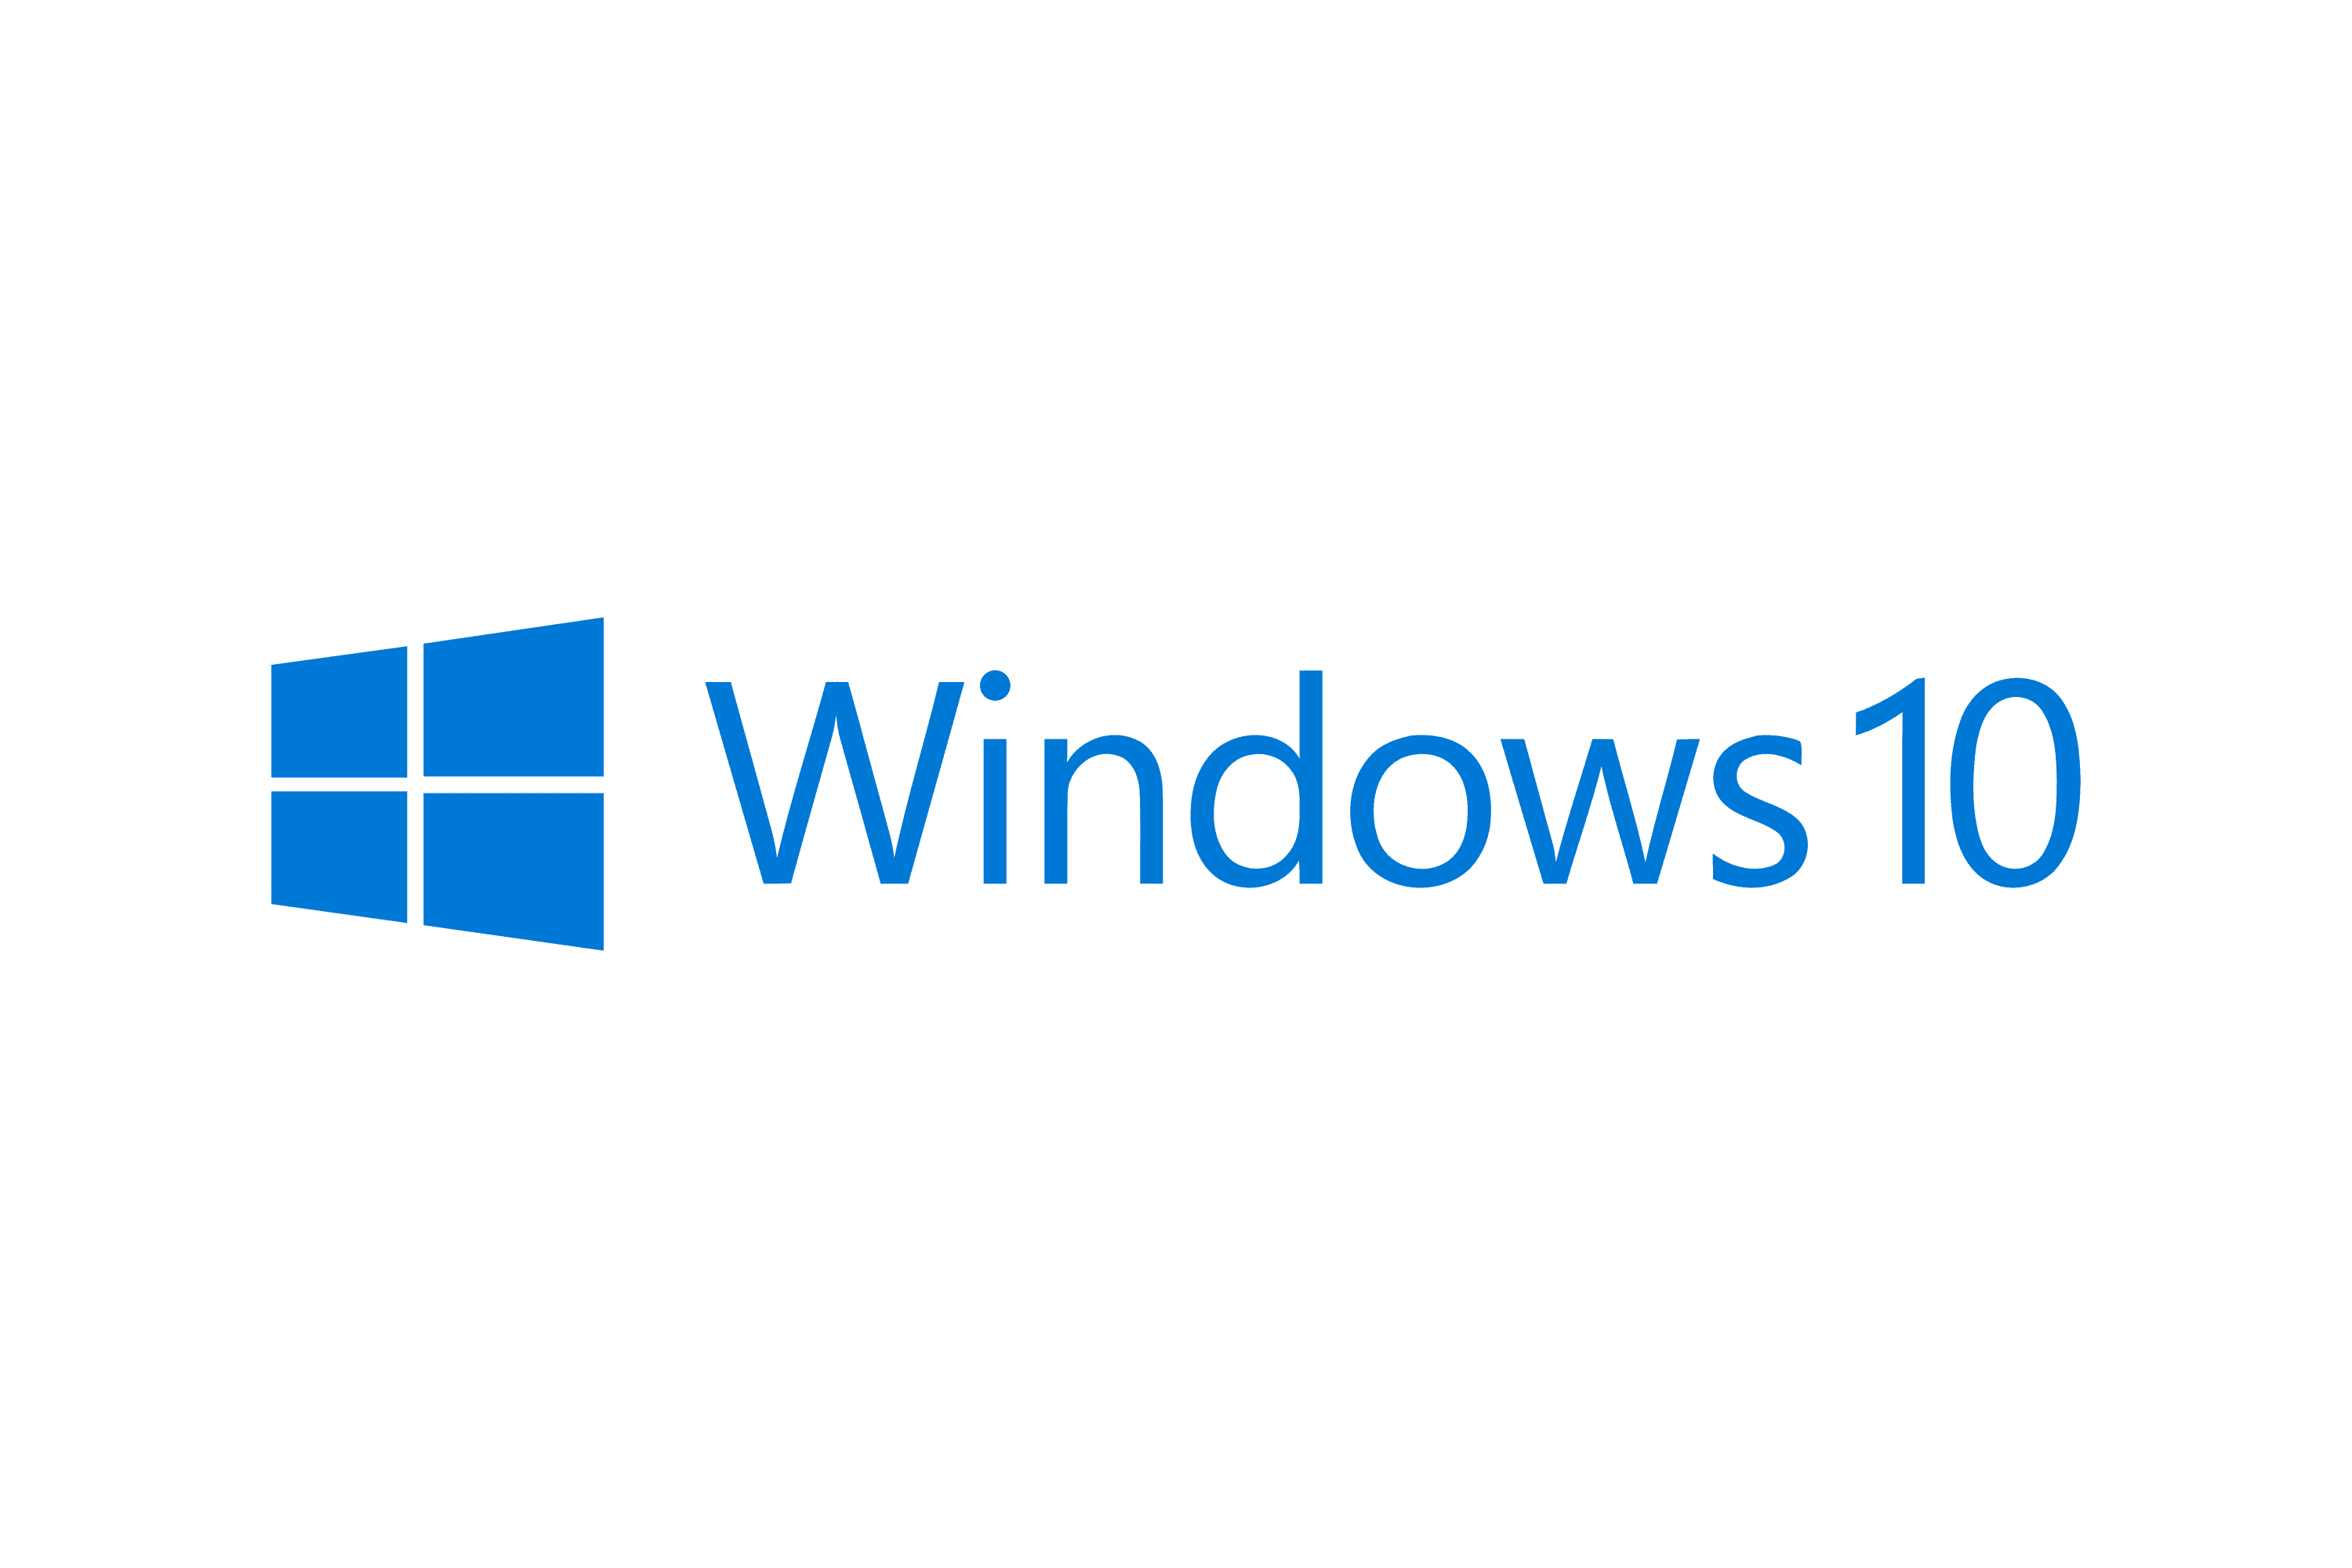 A versão de visualização opcional do Windows 10 KB5020030 já está disponível